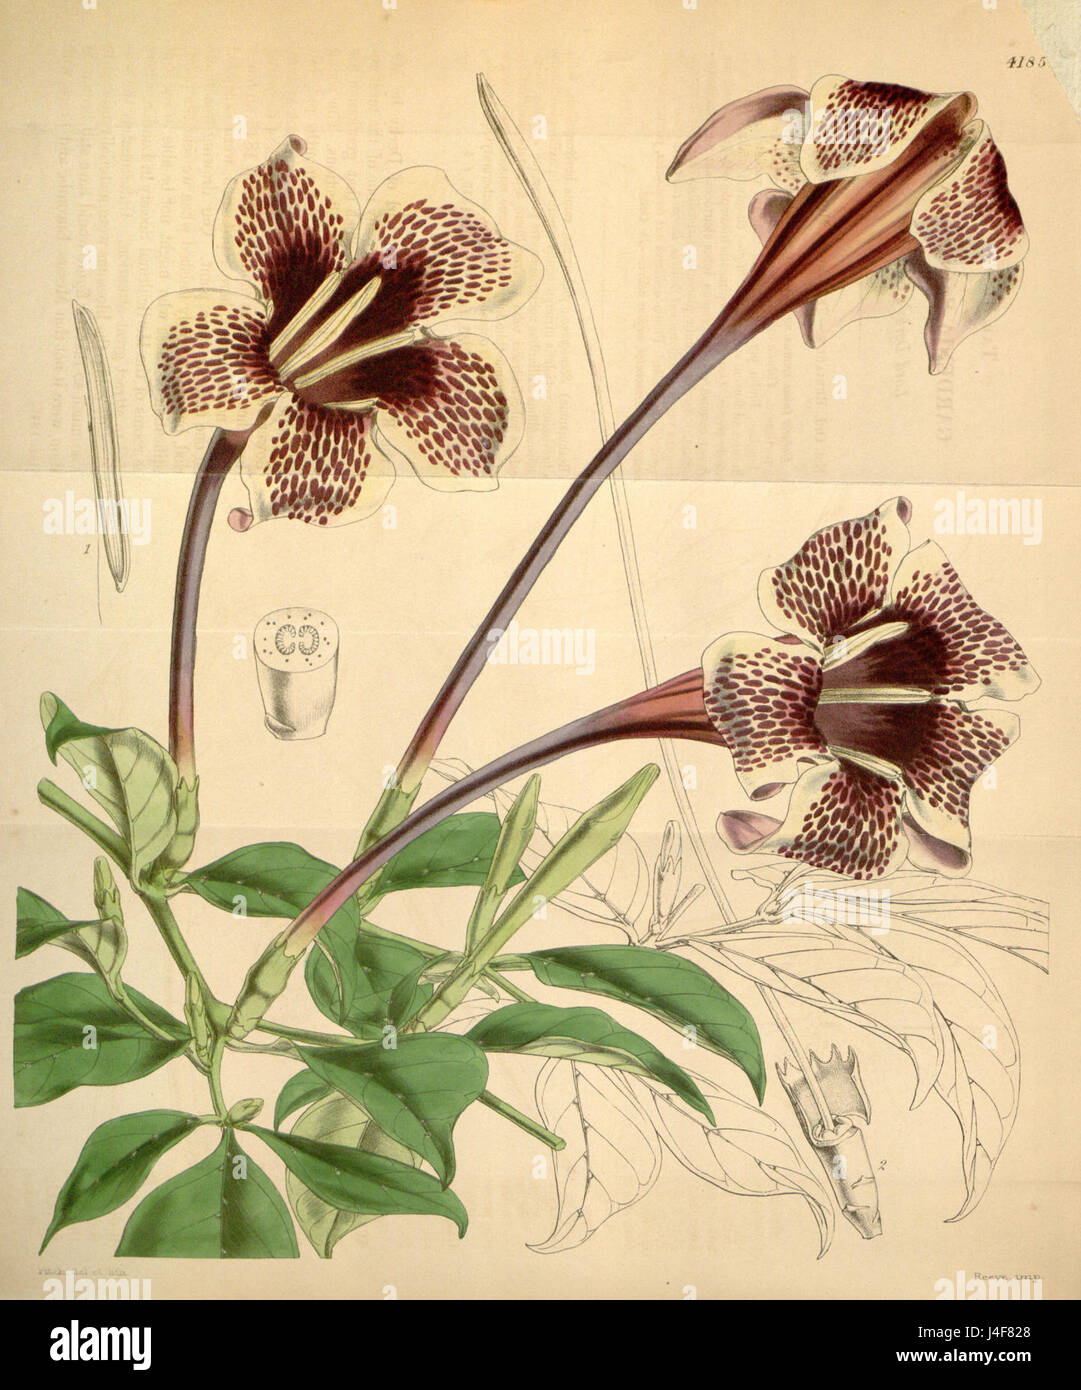 Rothmannia longiflora Bot. Mag. 71. 4185. 1845 Stock Photo